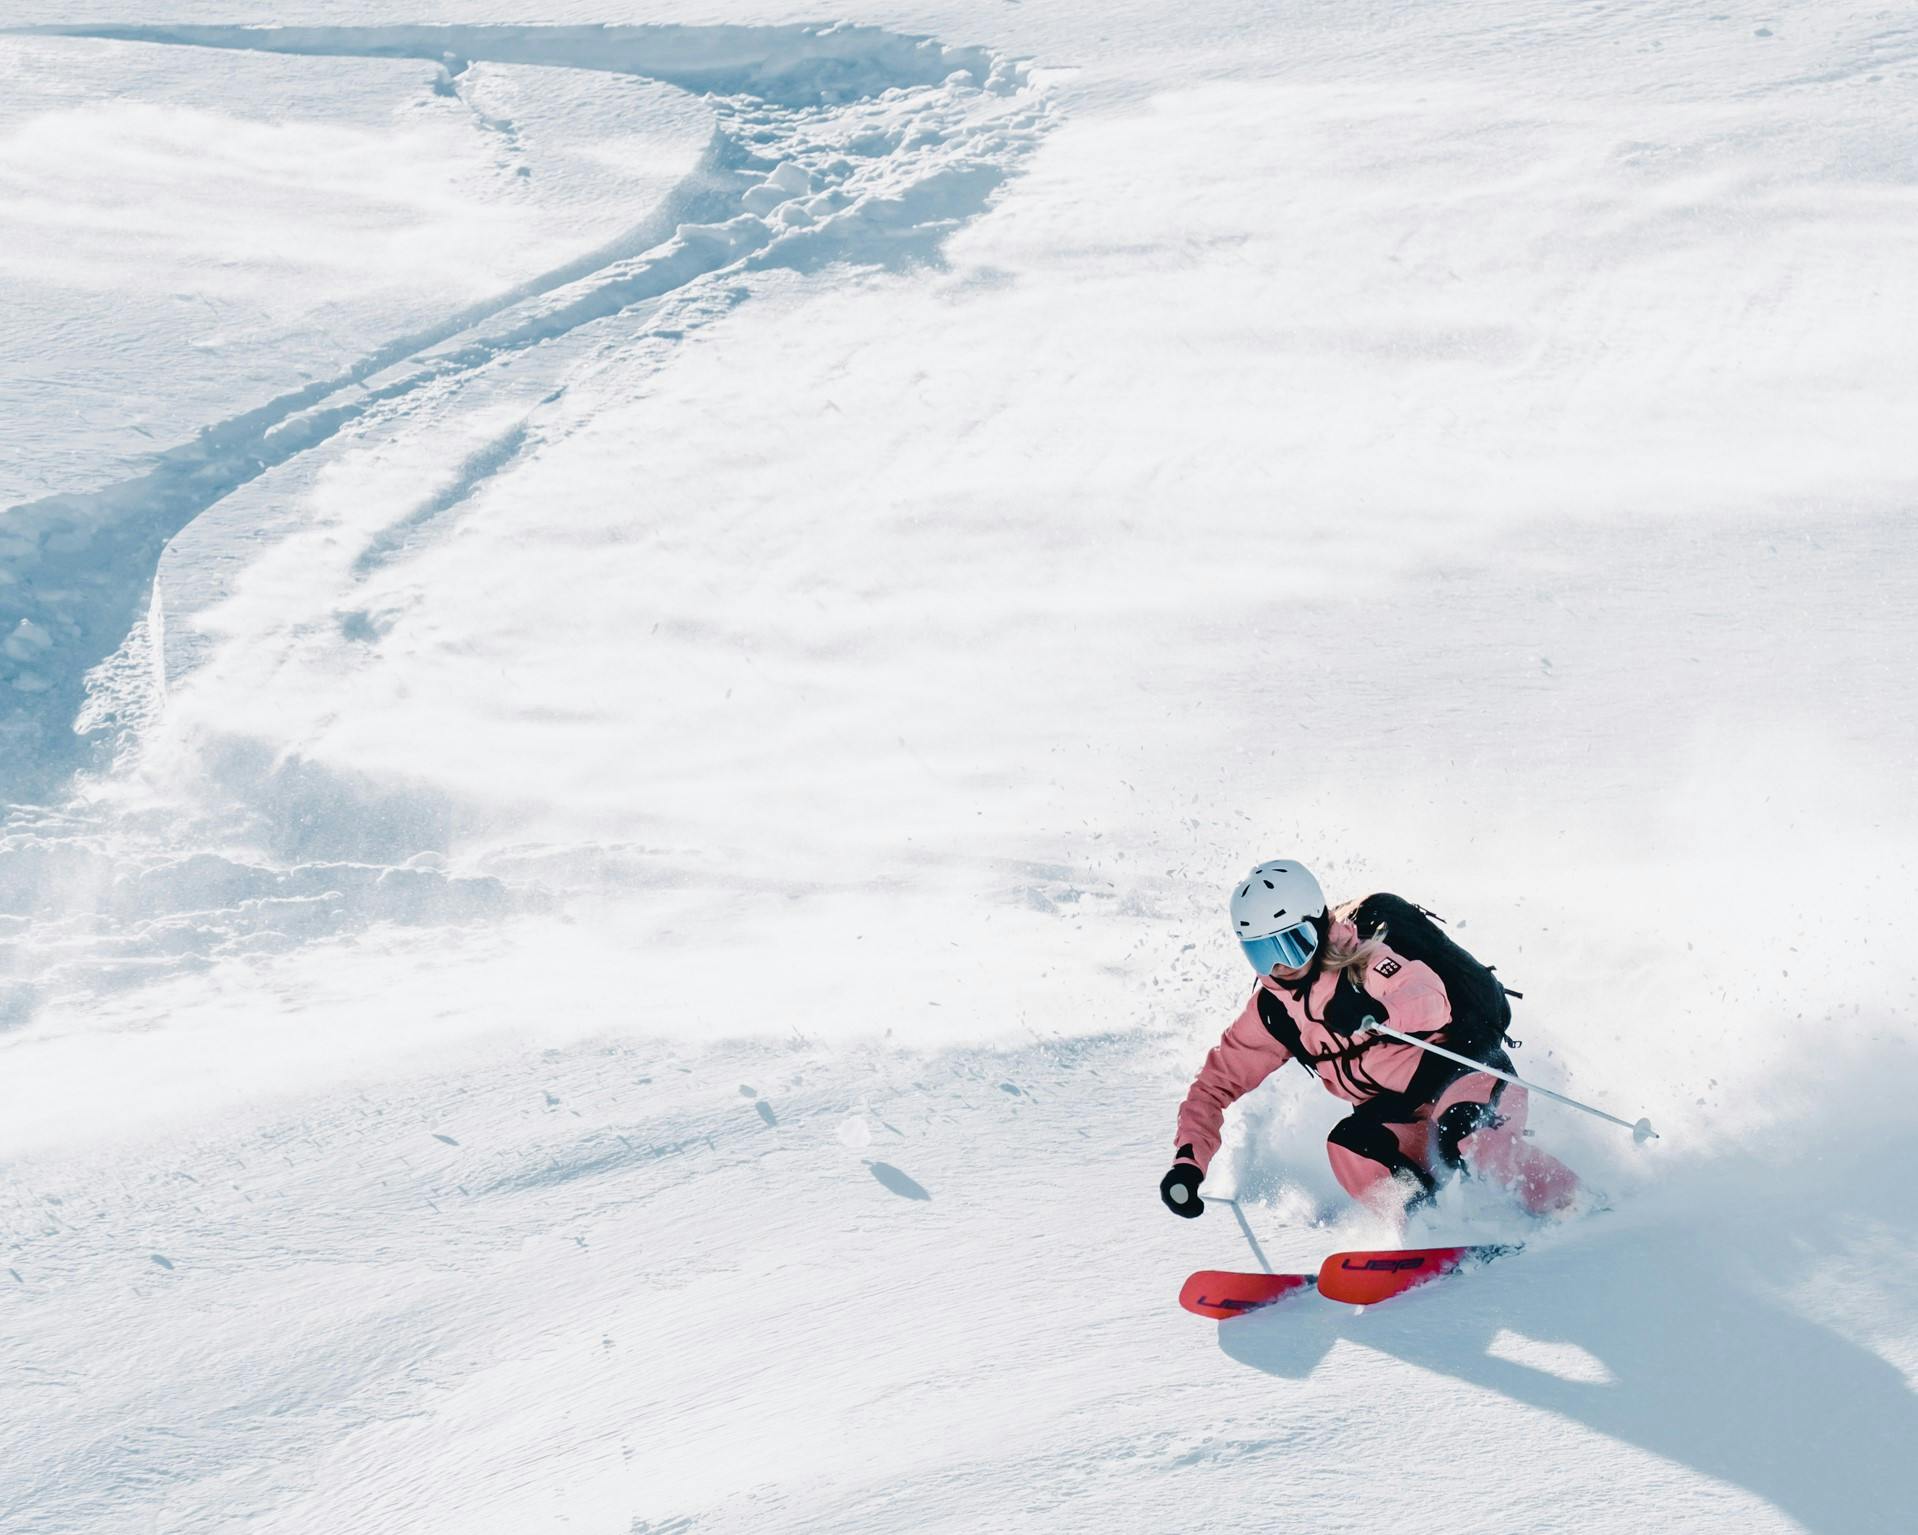 5 common mistakes when skiing powder